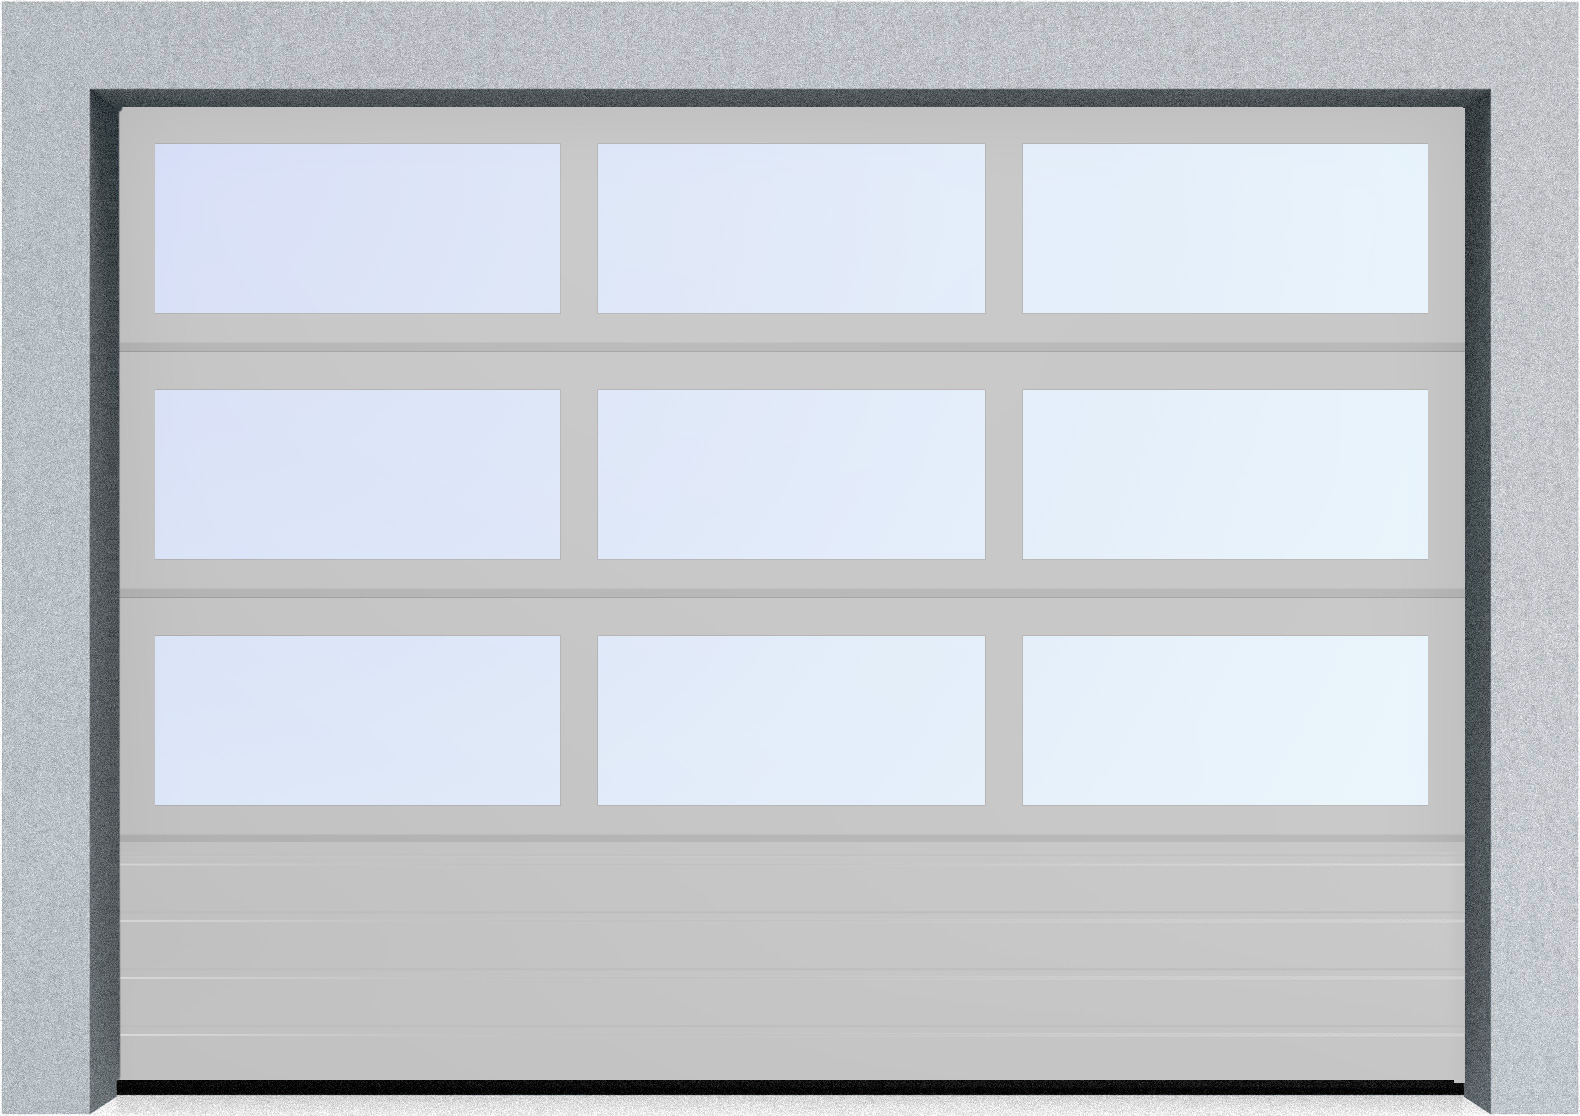  Автоматические секционные панорамные ворота серии AluTrend с комбинированным типом полотна (АЛПС) 3000х4500 S-гофр, Микроволна стандартные цвета, фото 16 